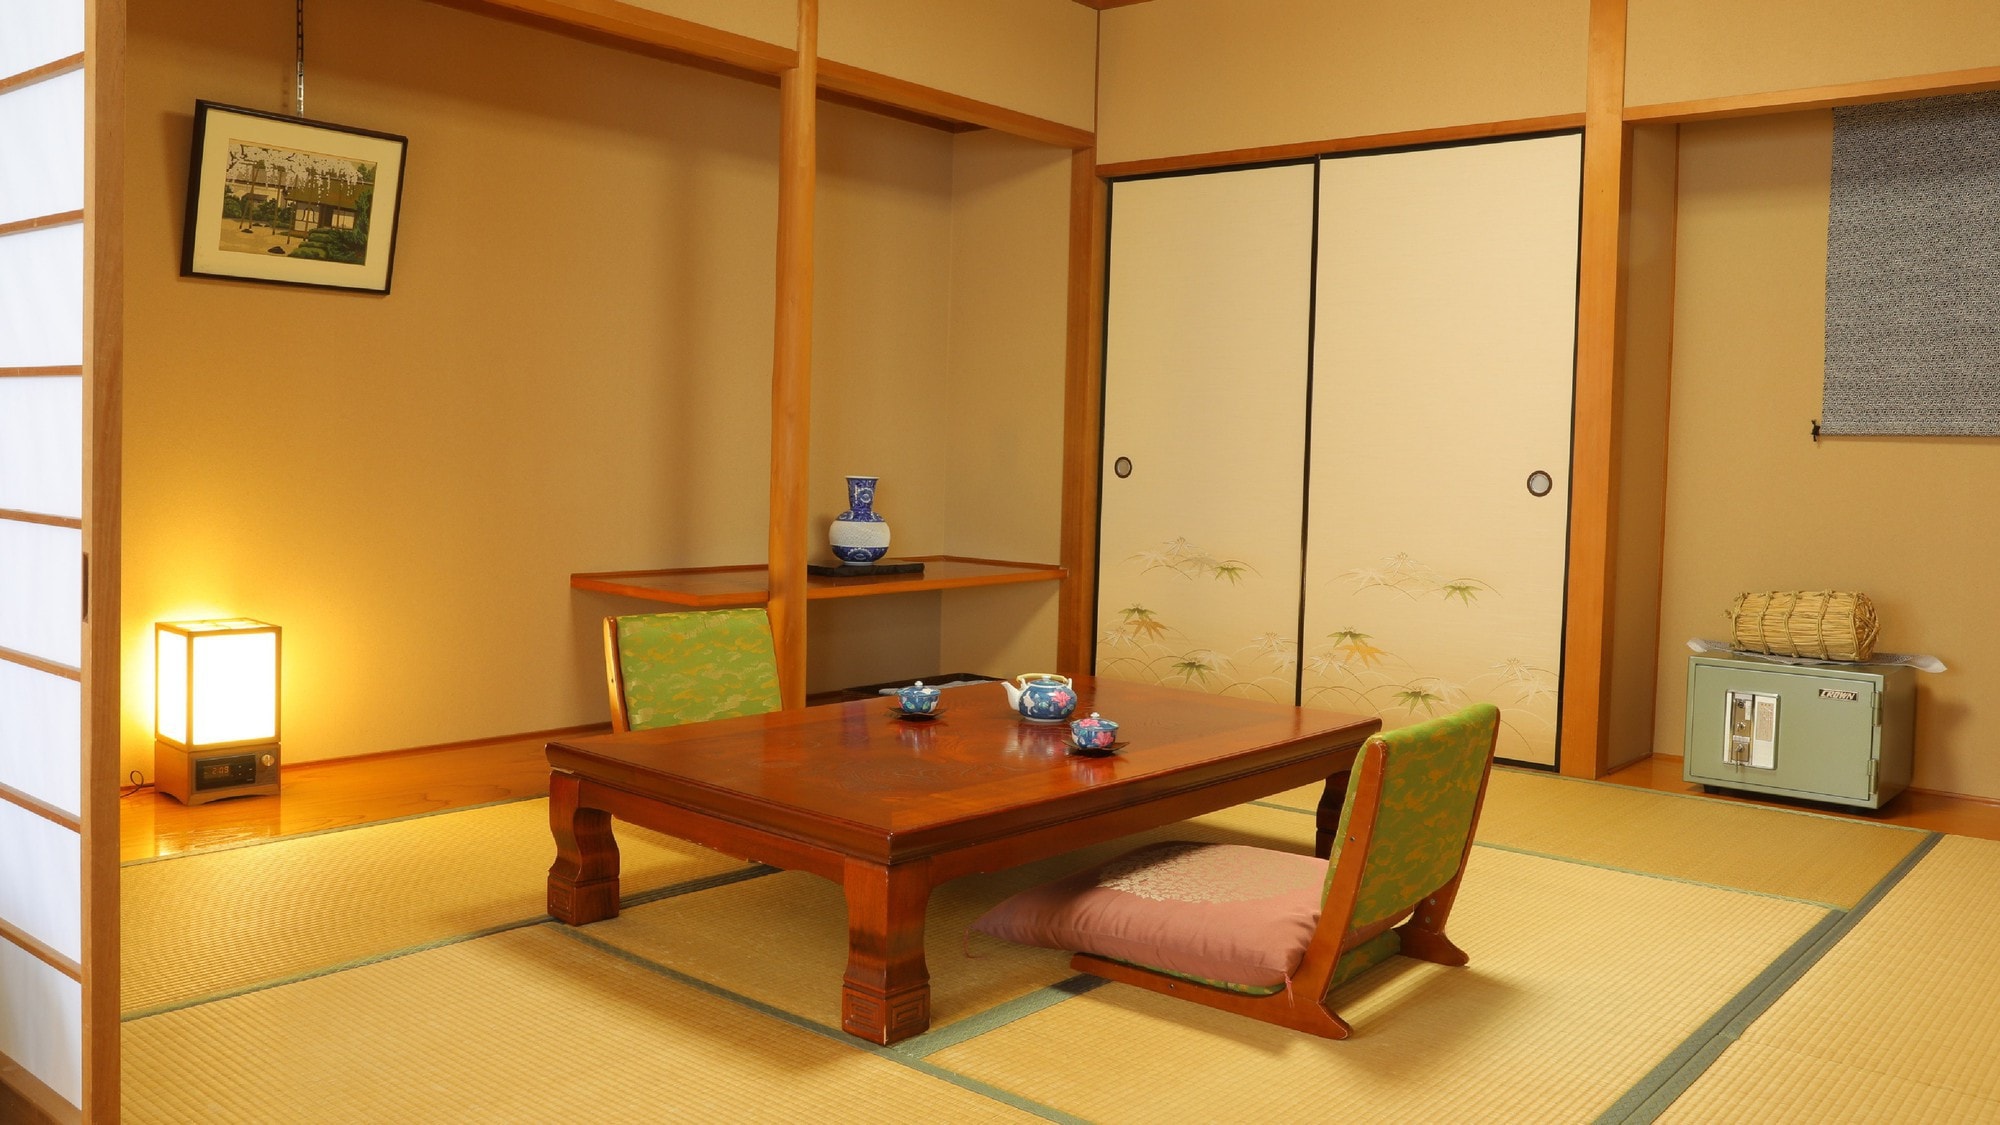 ห้องดีลักซ์สไตล์ญี่ปุ่นและตะวันตก